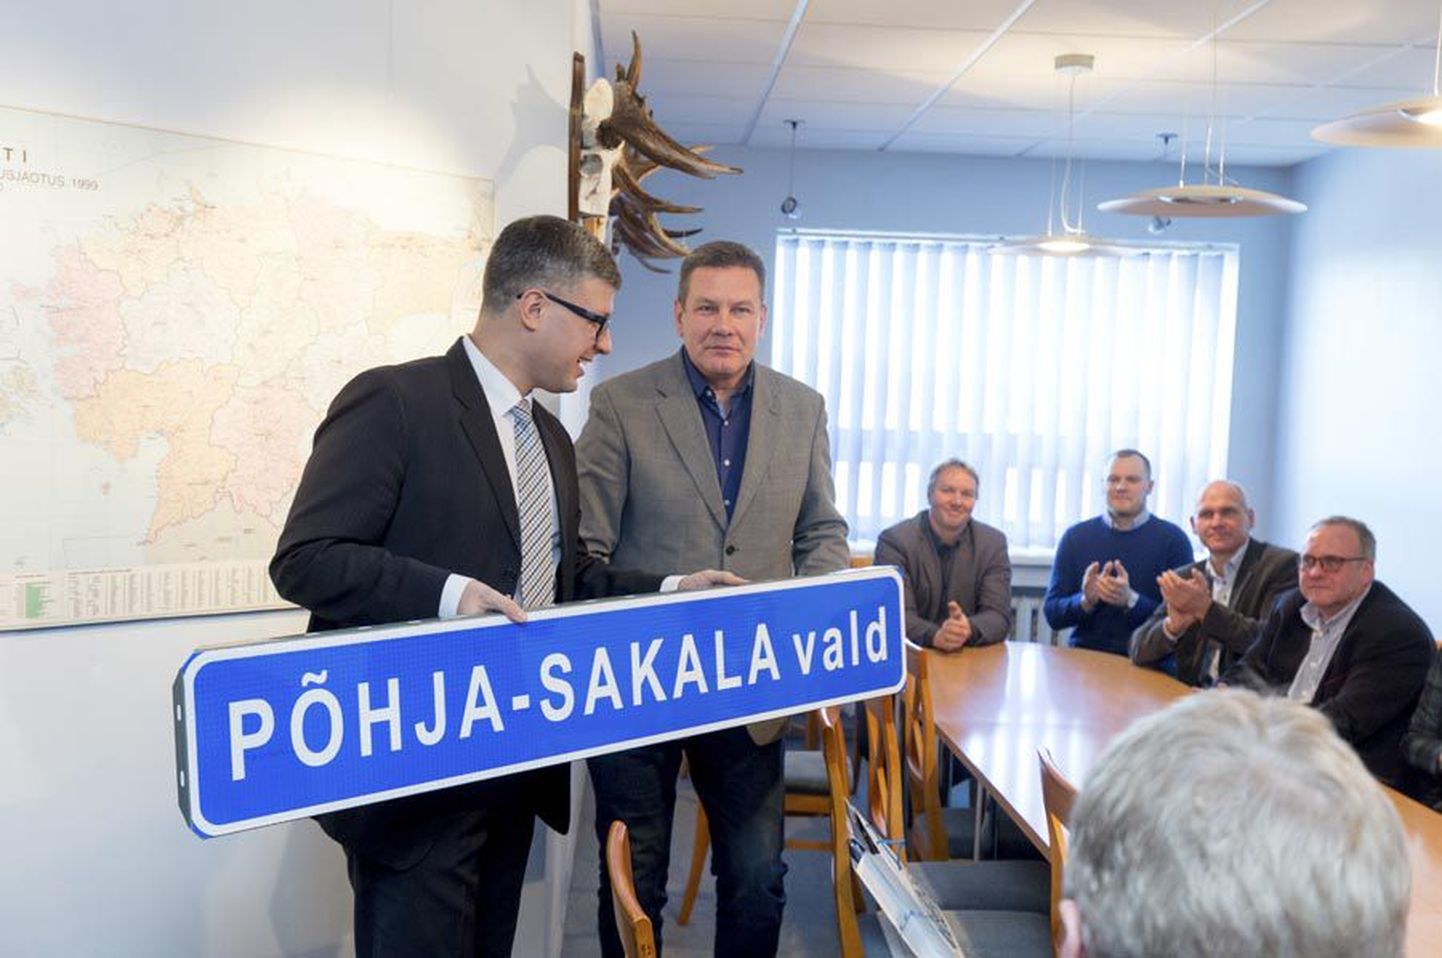 Riigihalduse minister Mihhail Korb (vasakul) andis praeguse Suure-Jaani vallavolikogu esimehele Arnold Pastakule uue valla nimega sildi kätte juba jaanuari alguses. Nüüd lisas valitsus veel 1,43 miljonit eurot ühinemistoetust.